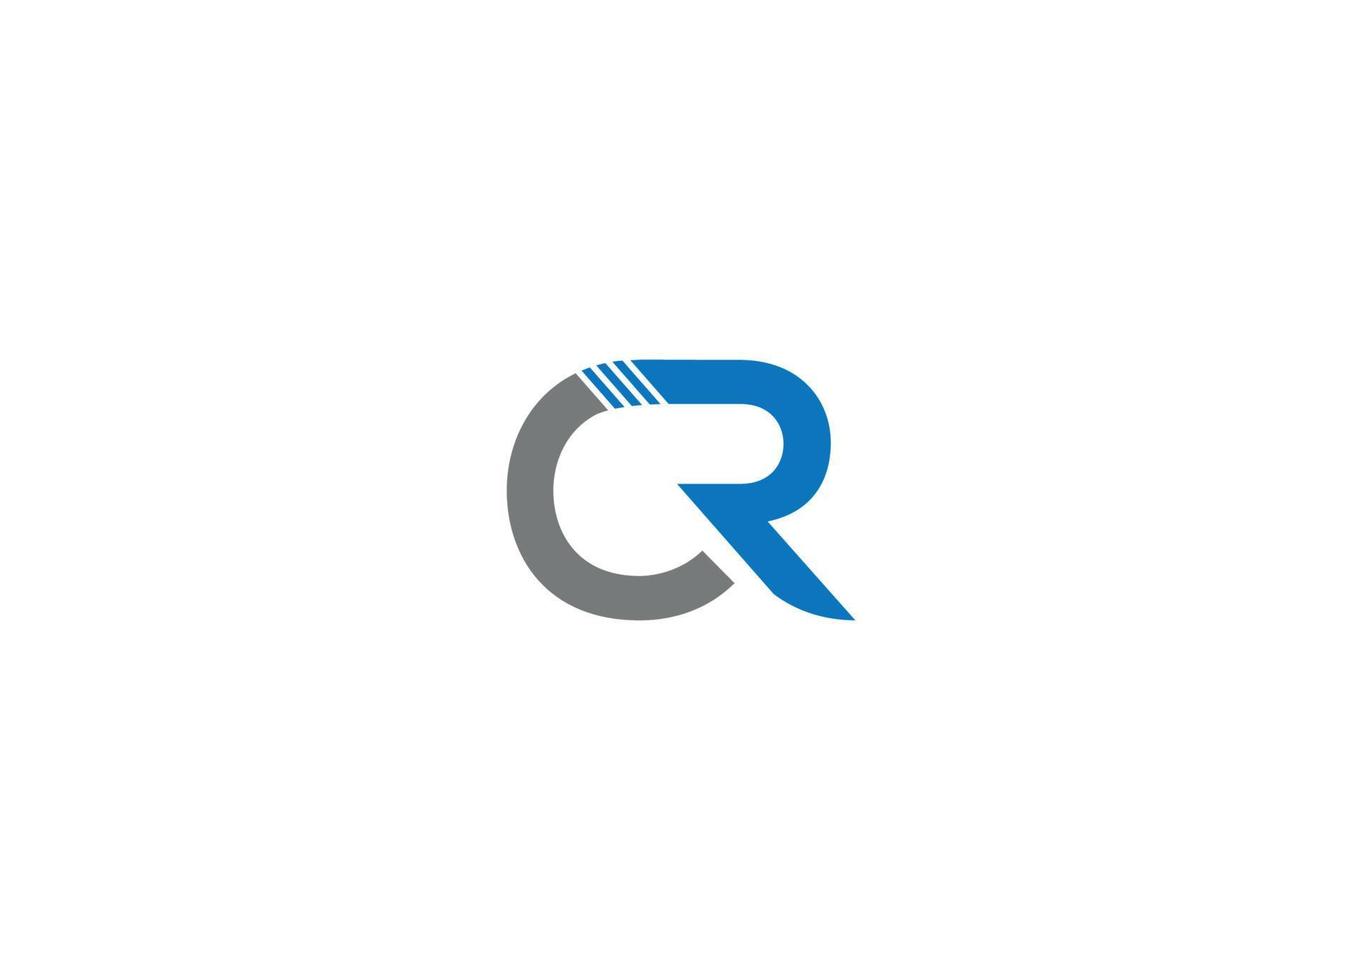 cr lettera logo design con modello di icona vettore moderno creativo